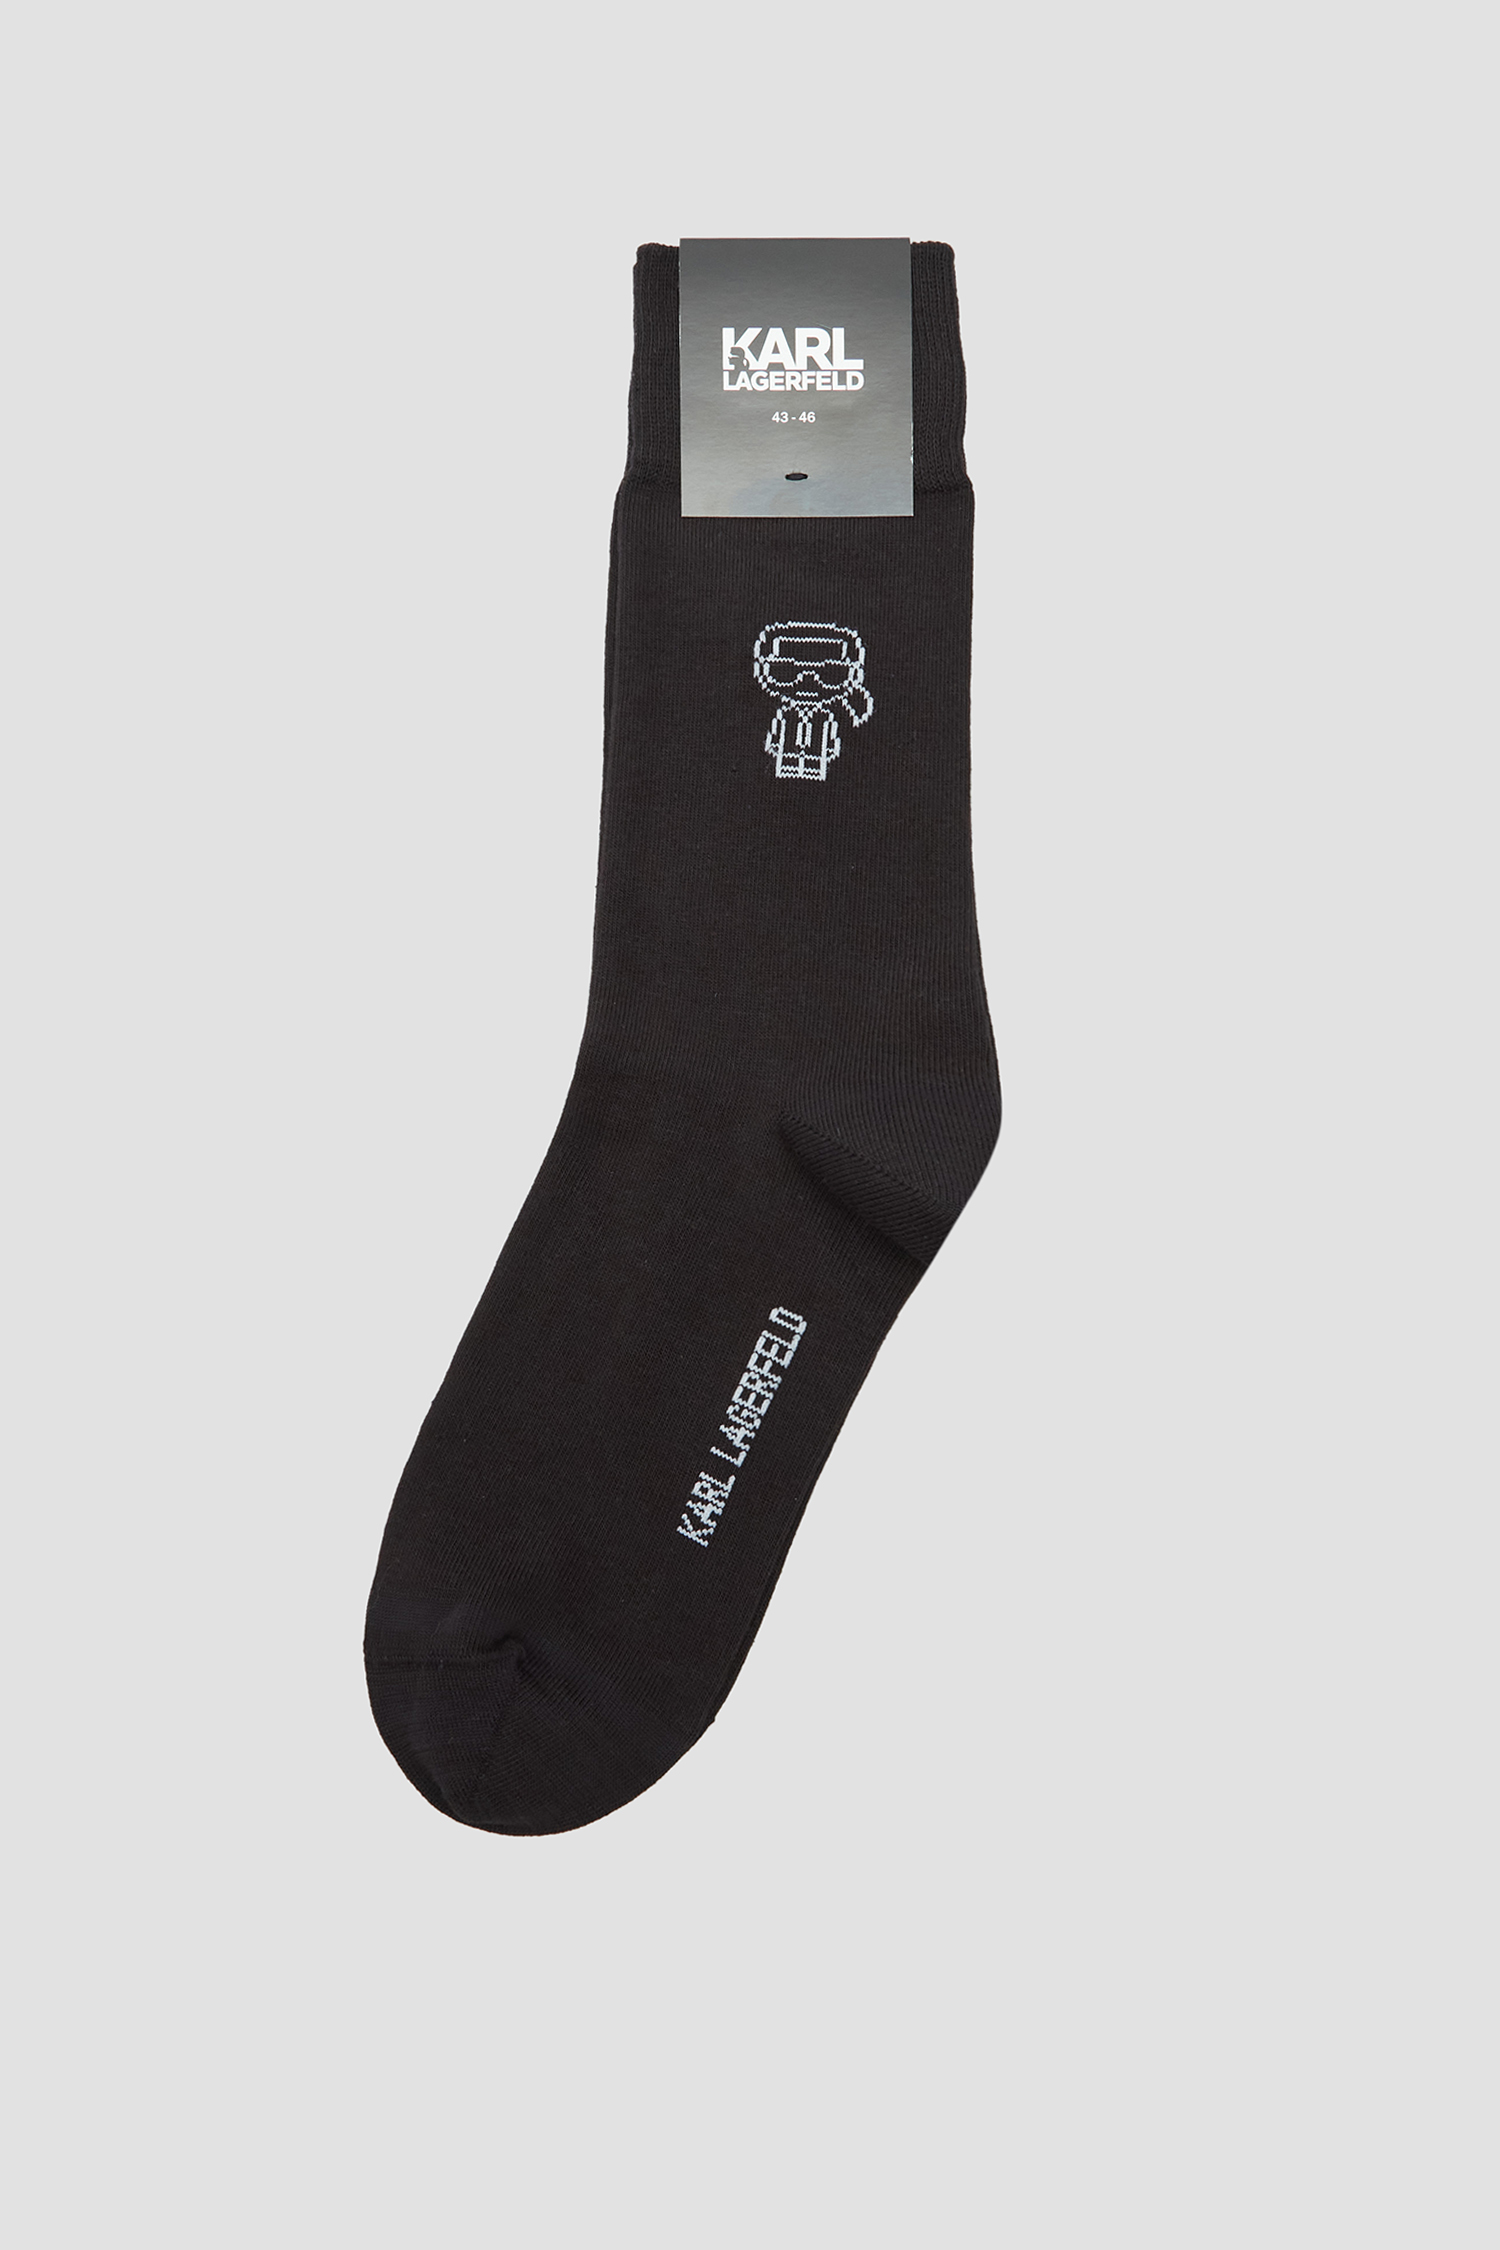 Чоловічі чорні шкарпетки Karl Lagerfeld 542102.805512;990